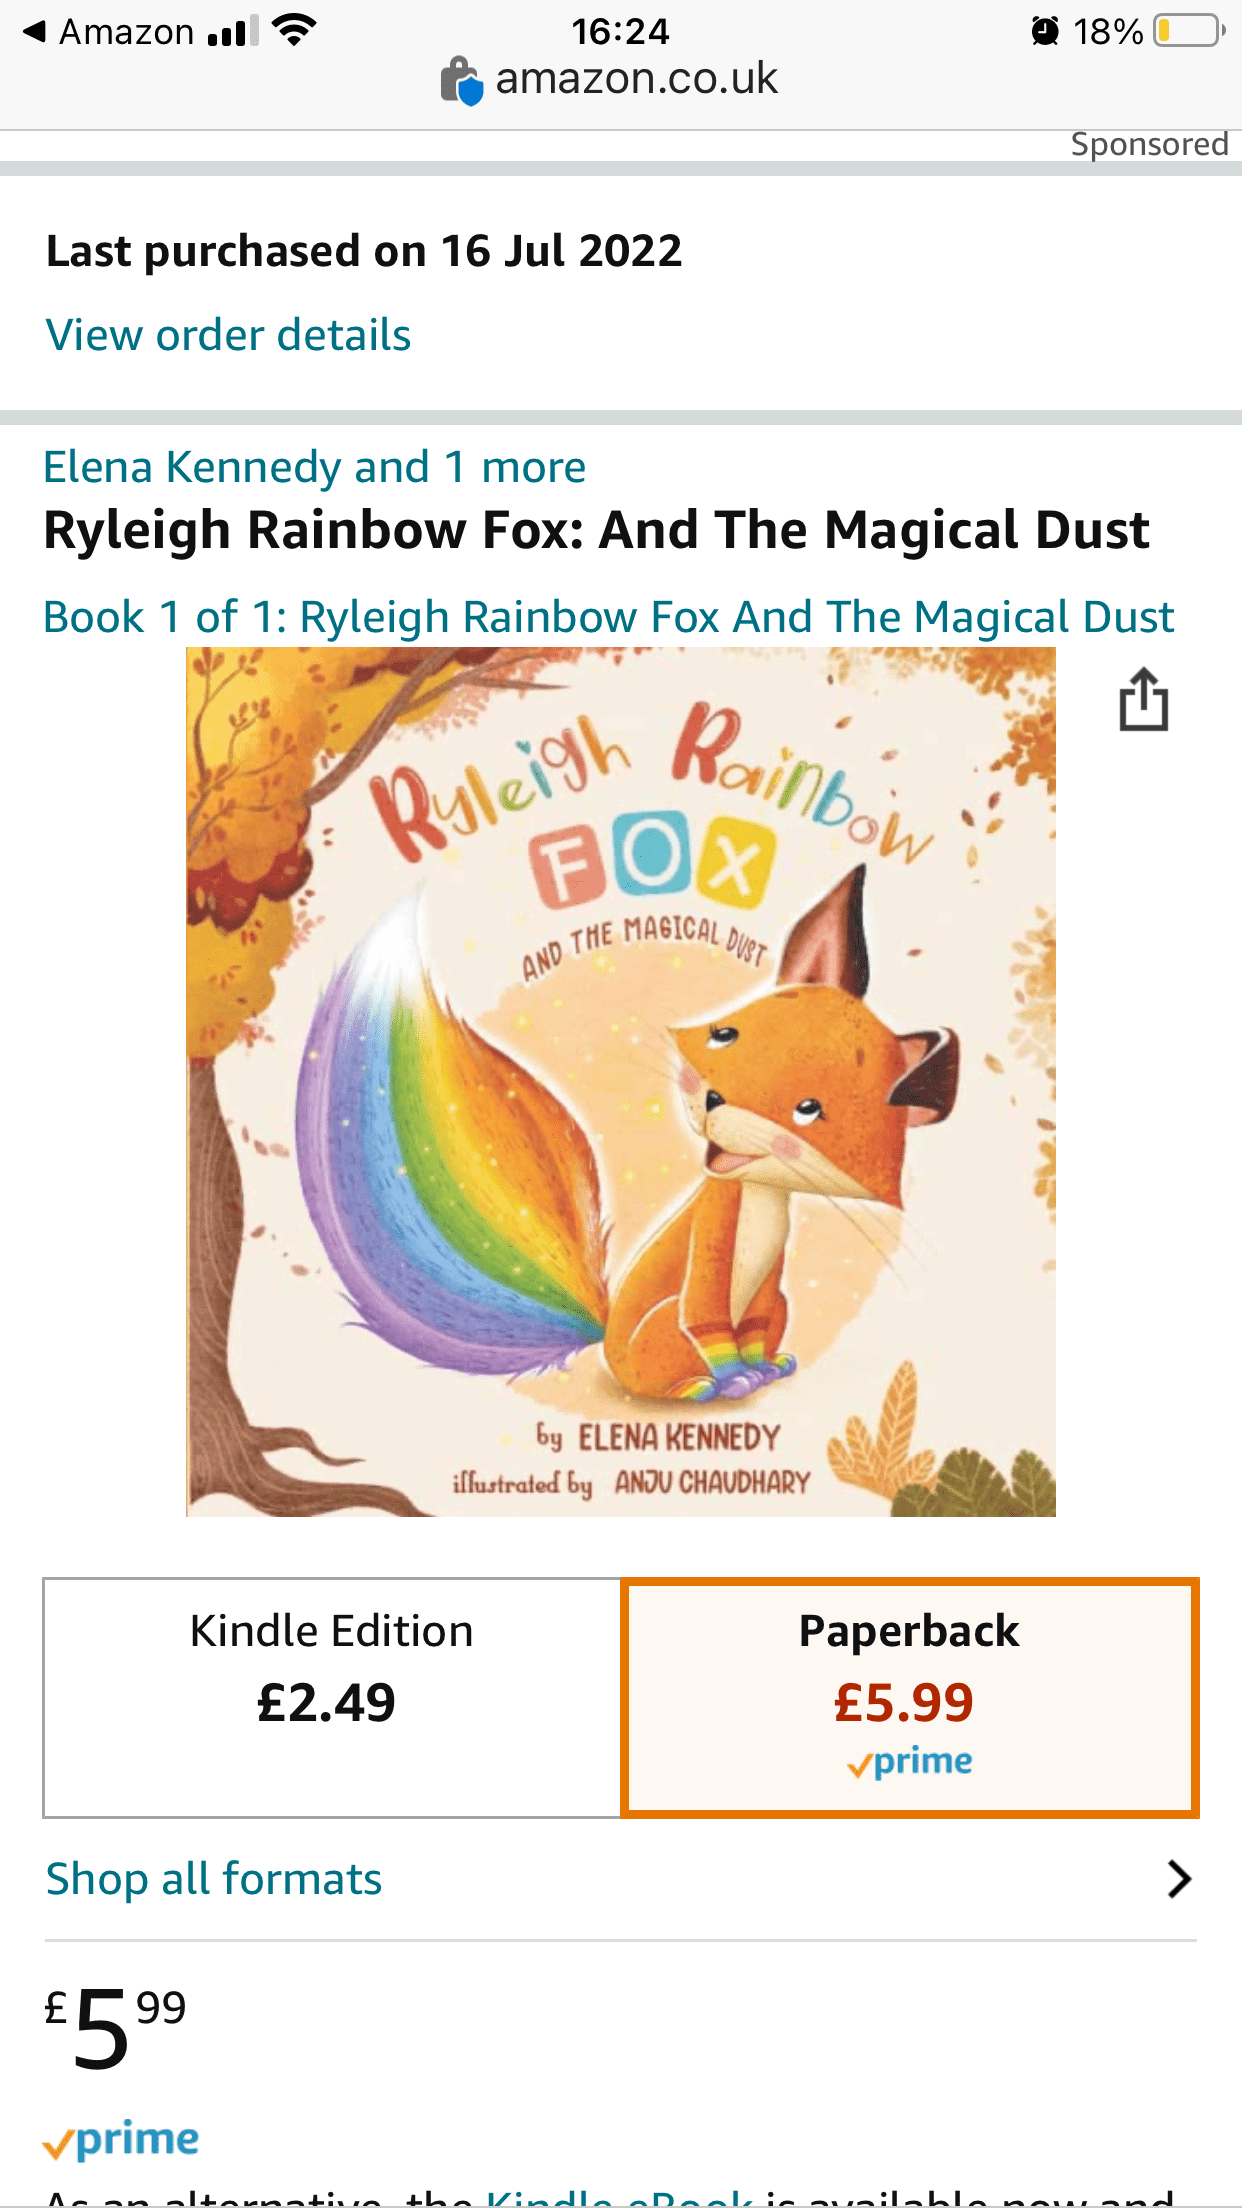 Ryleigh Rainbow Fox & The Magical Dust, now available on Amazon!